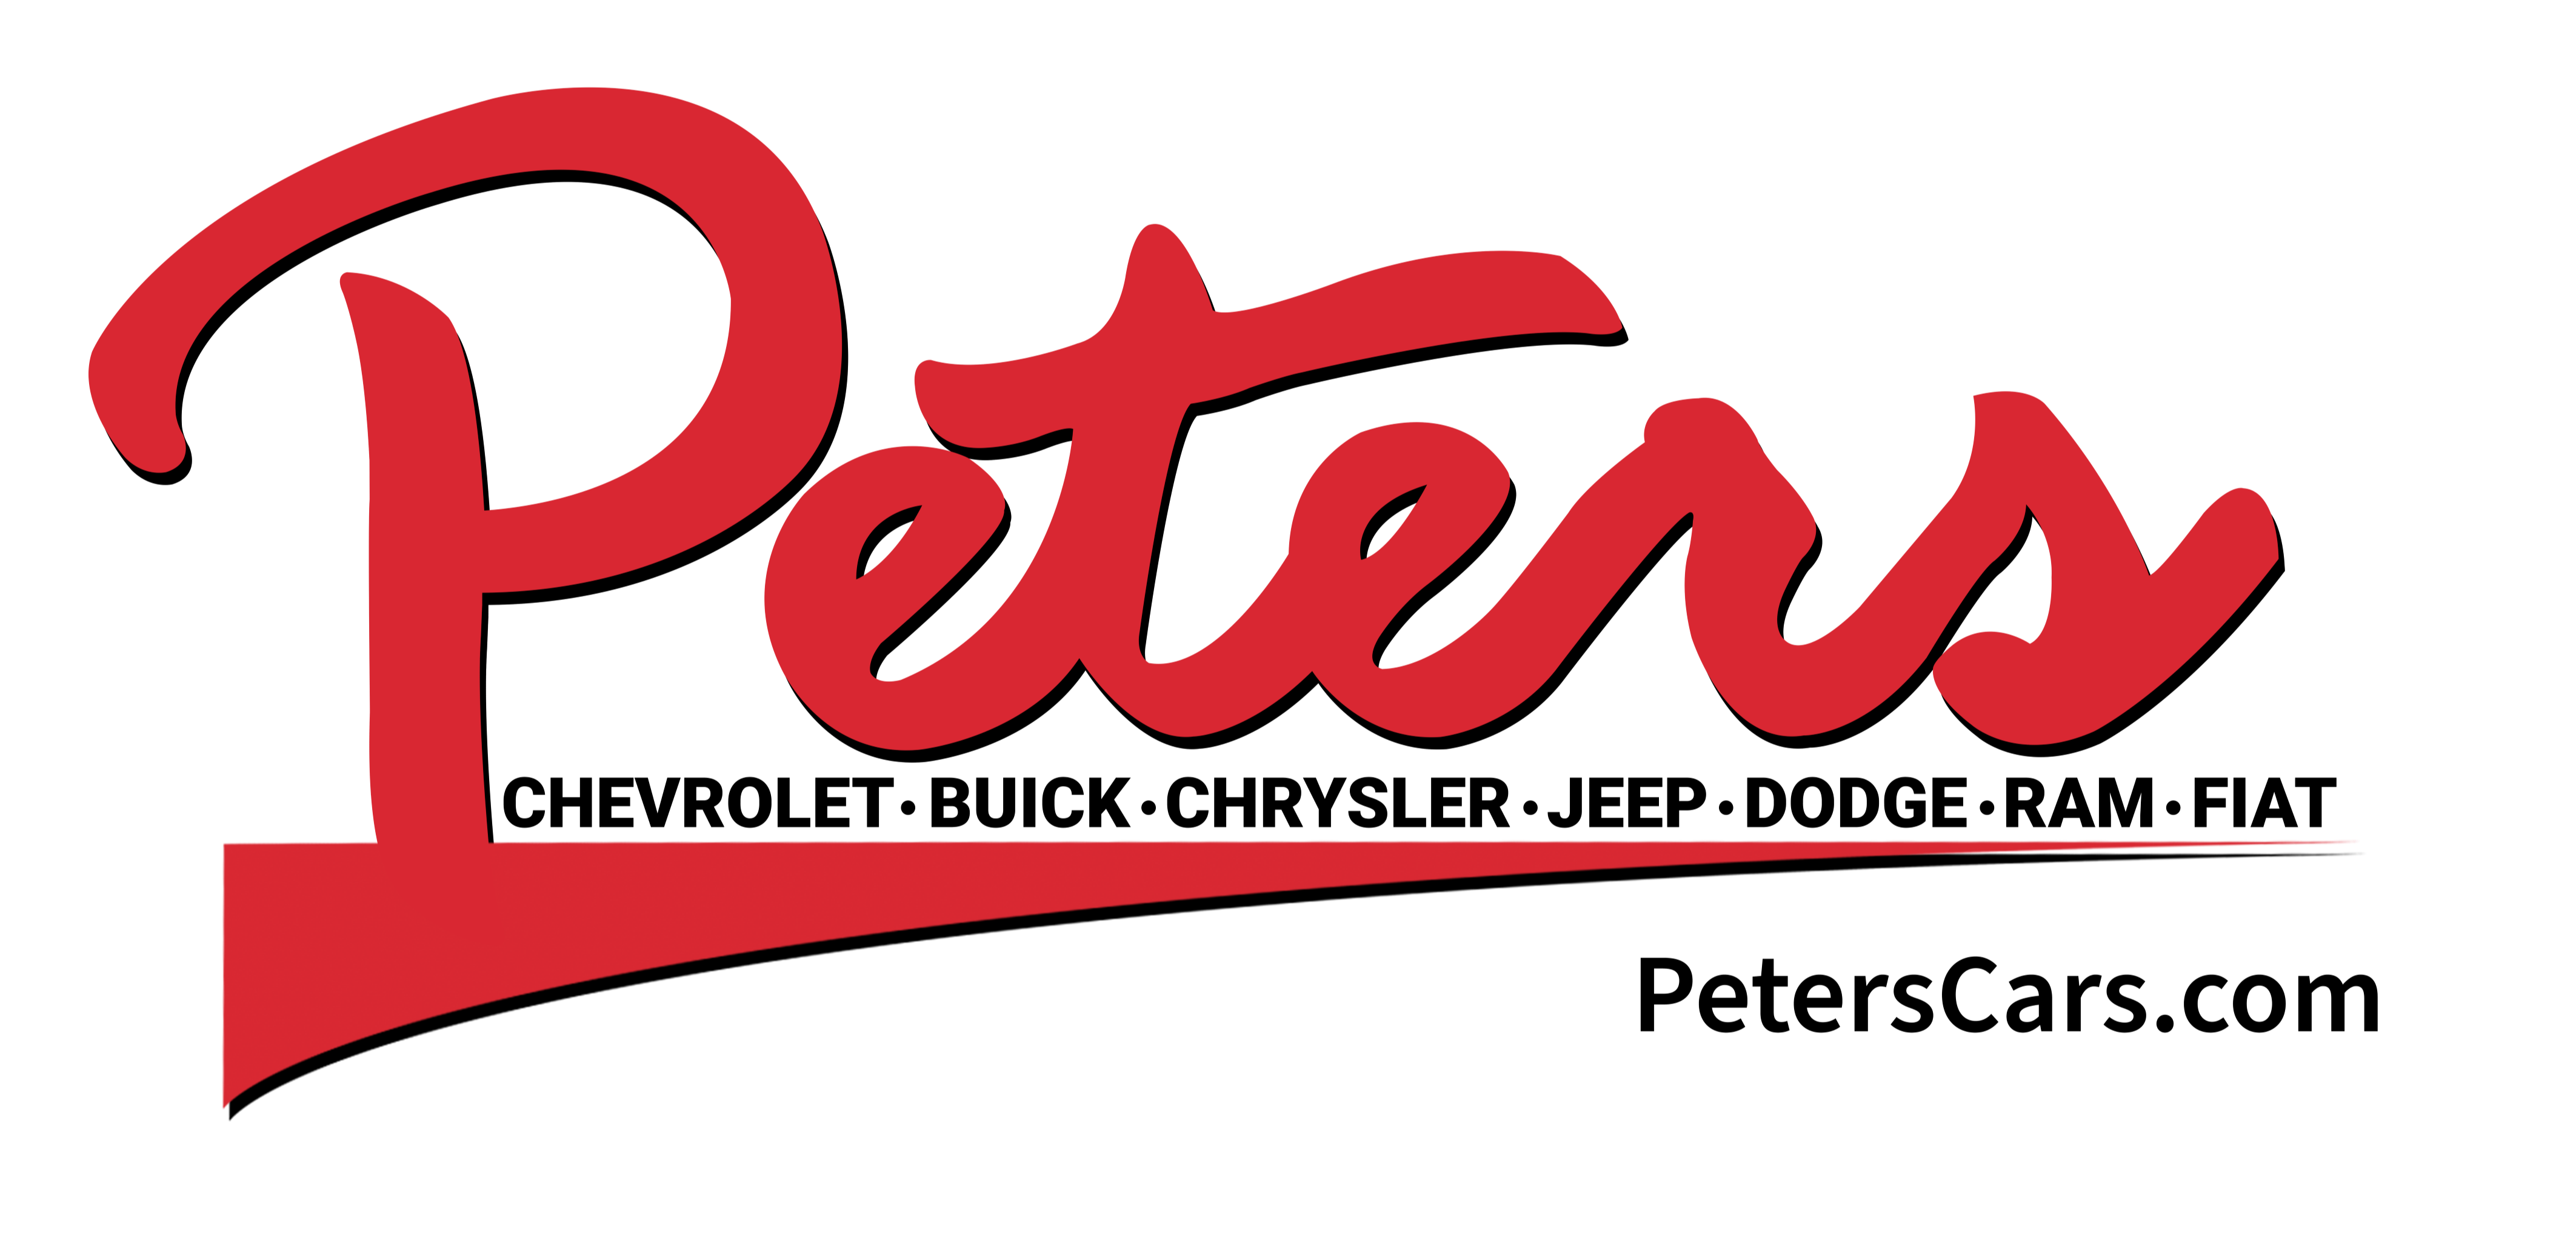 Peters 